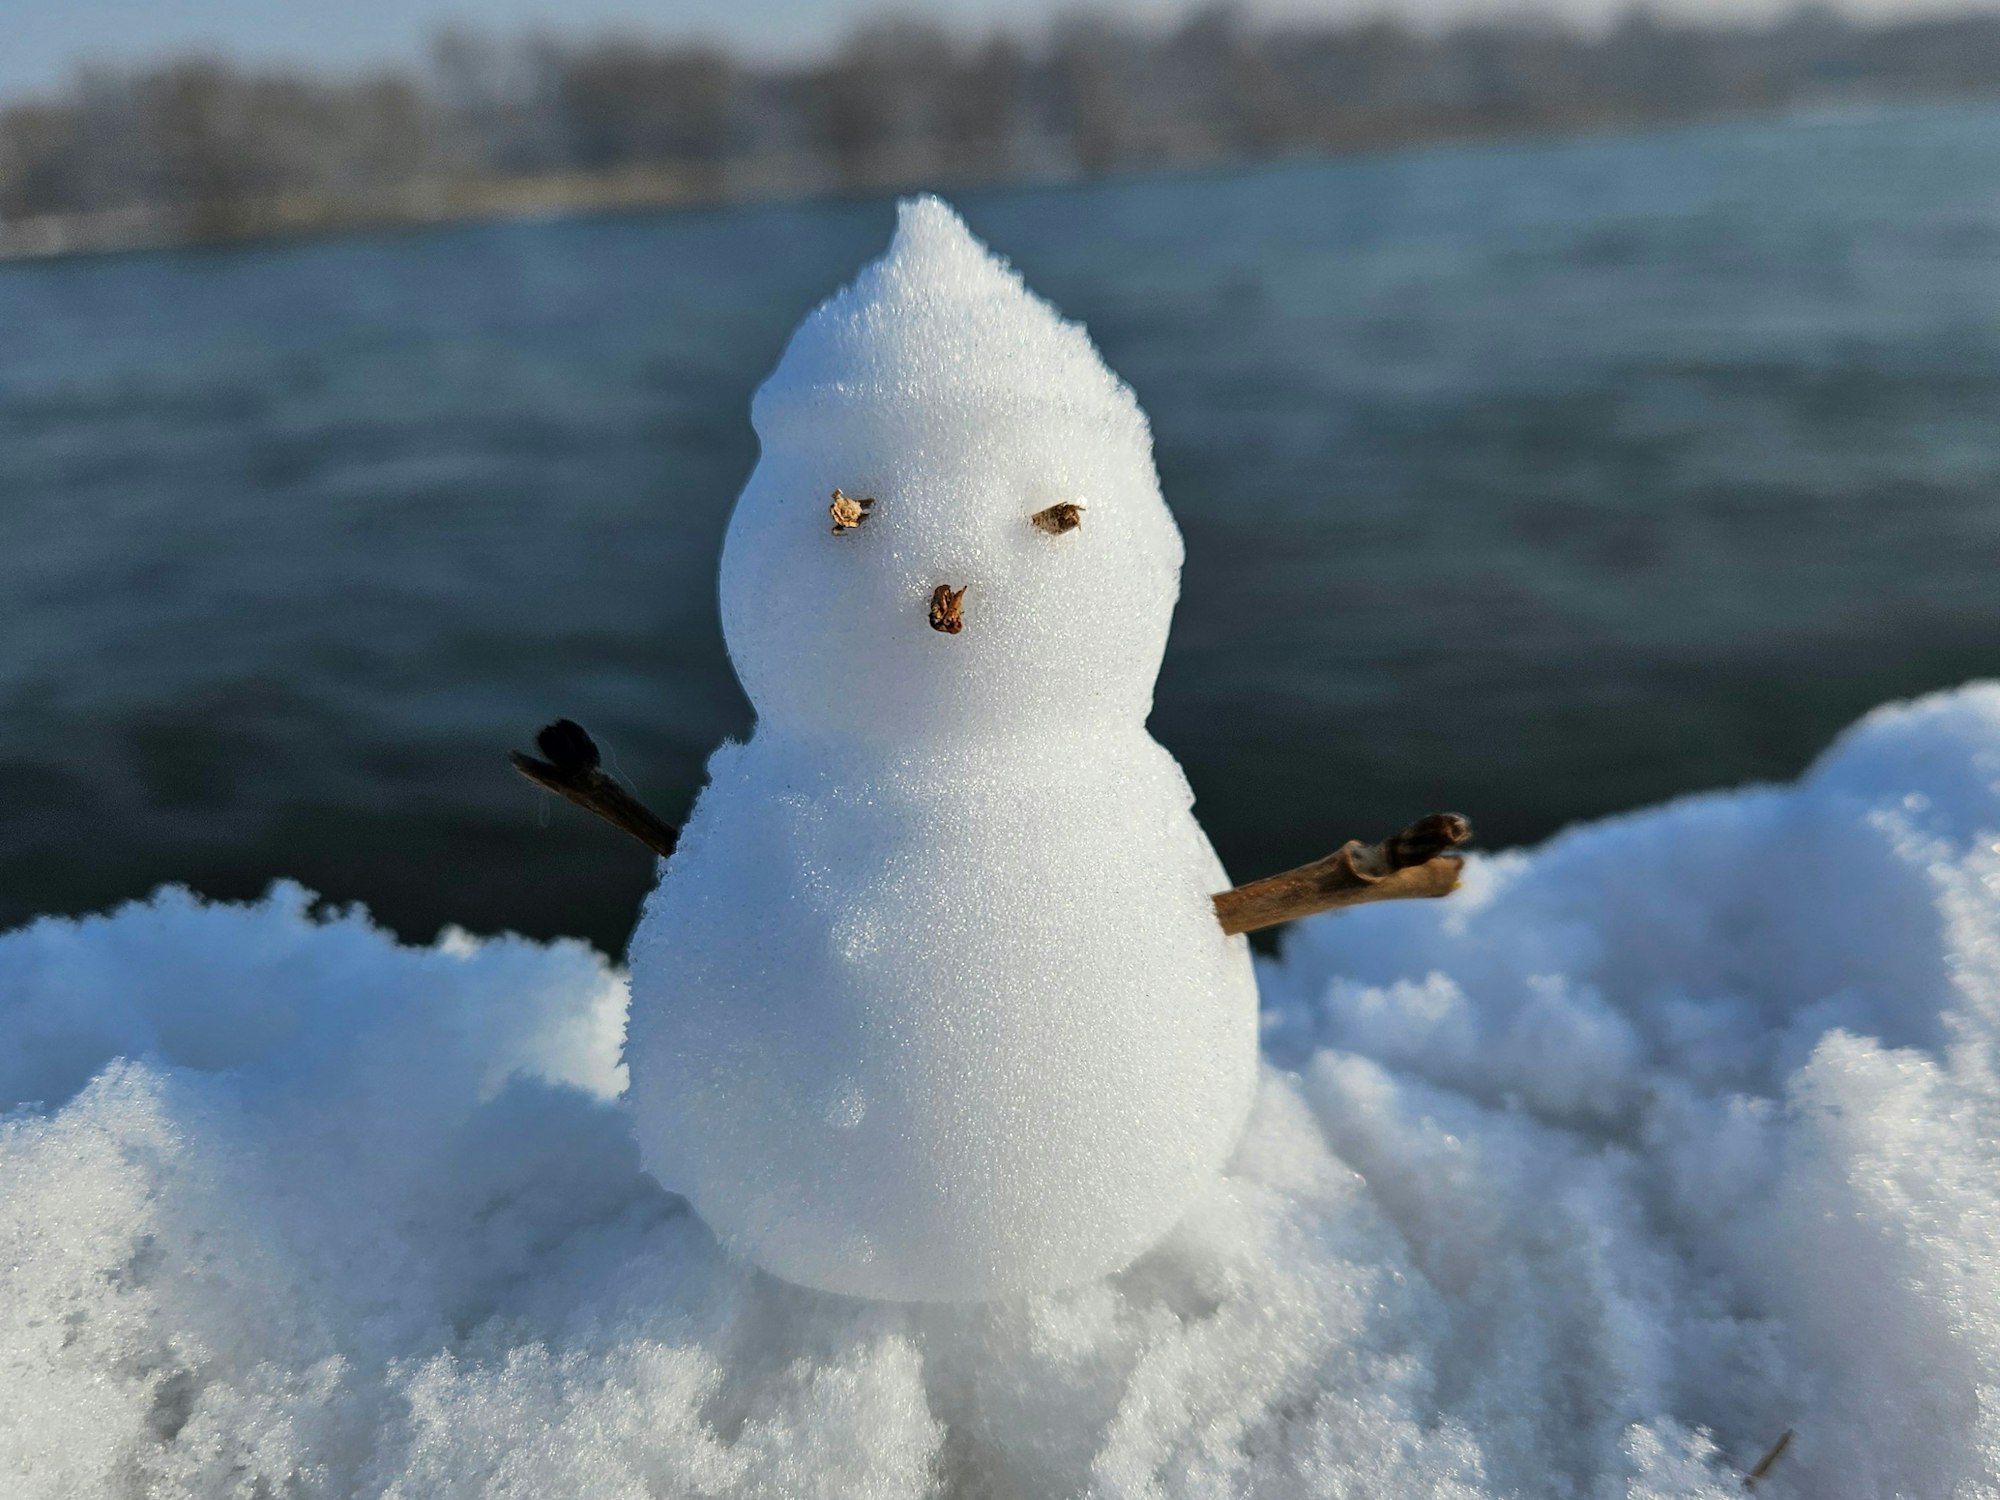 Ein kleiner Schneemann auf einem Geländer.